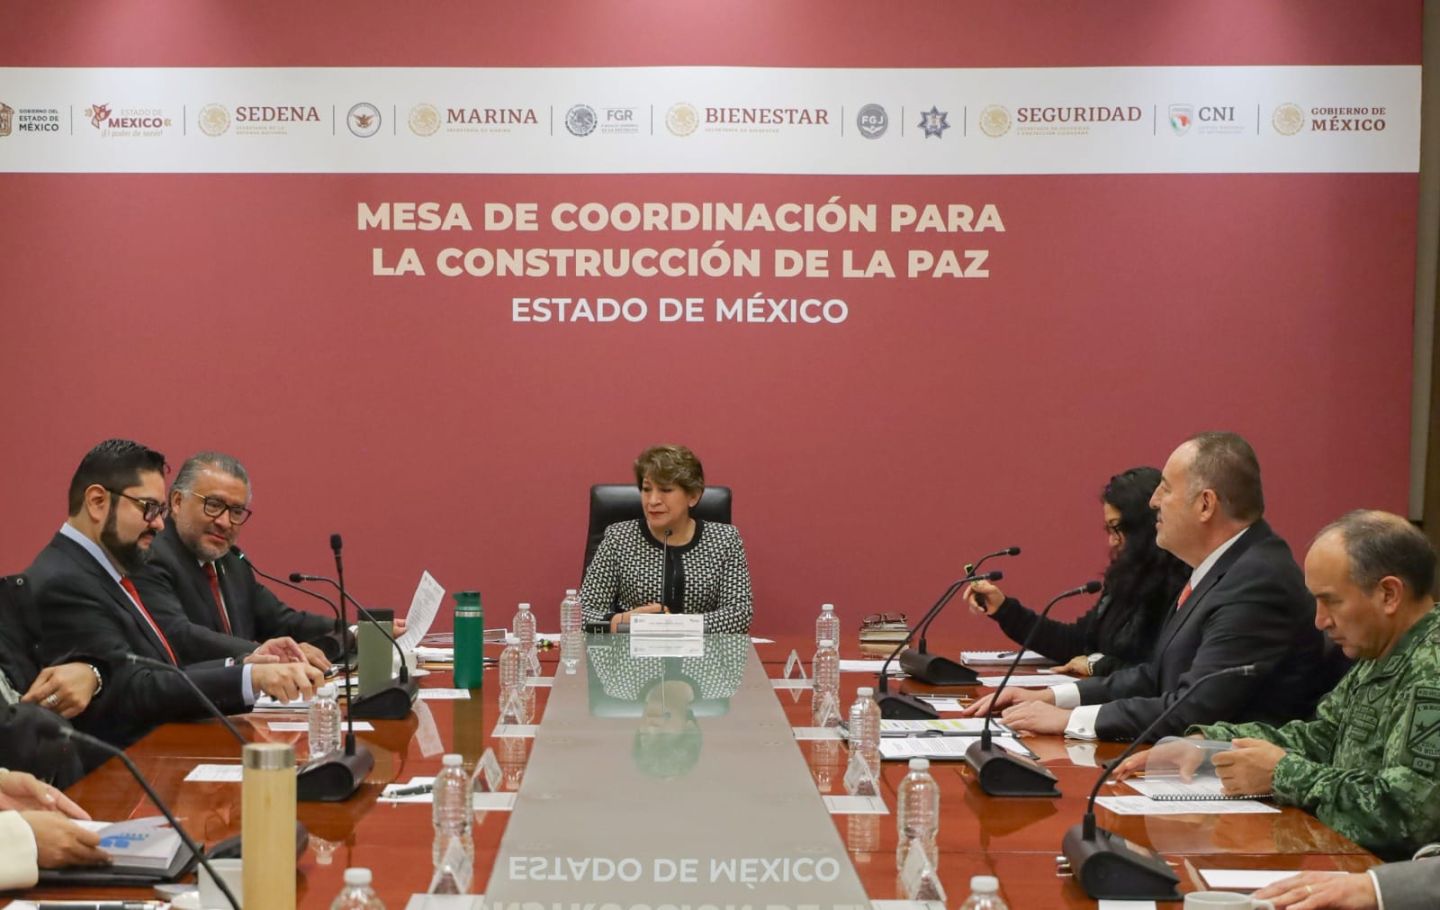 La Gobernadora Delfina Gómez Alvarez Exhorta a Trabajar
de Manera Coordinada Para Combatir la Inseguridad
